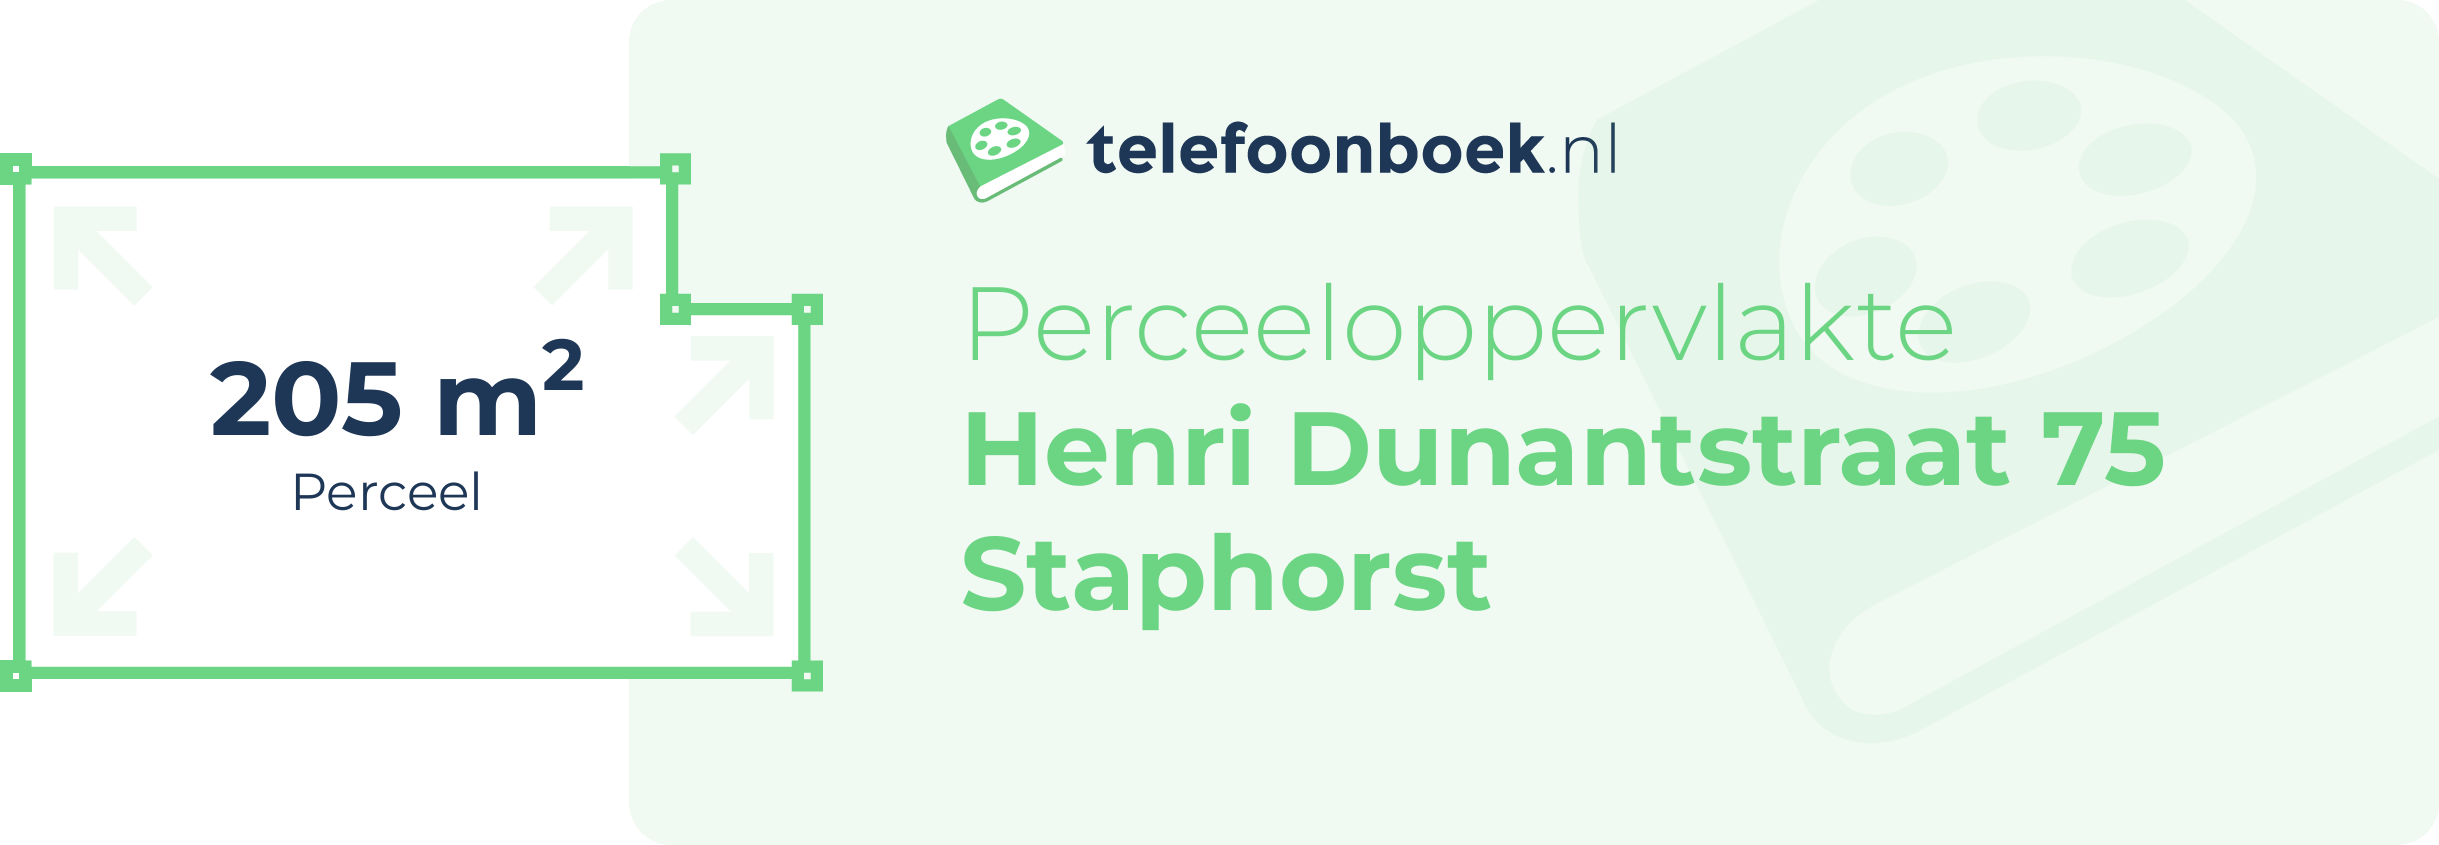 Perceeloppervlakte Henri Dunantstraat 75 Staphorst